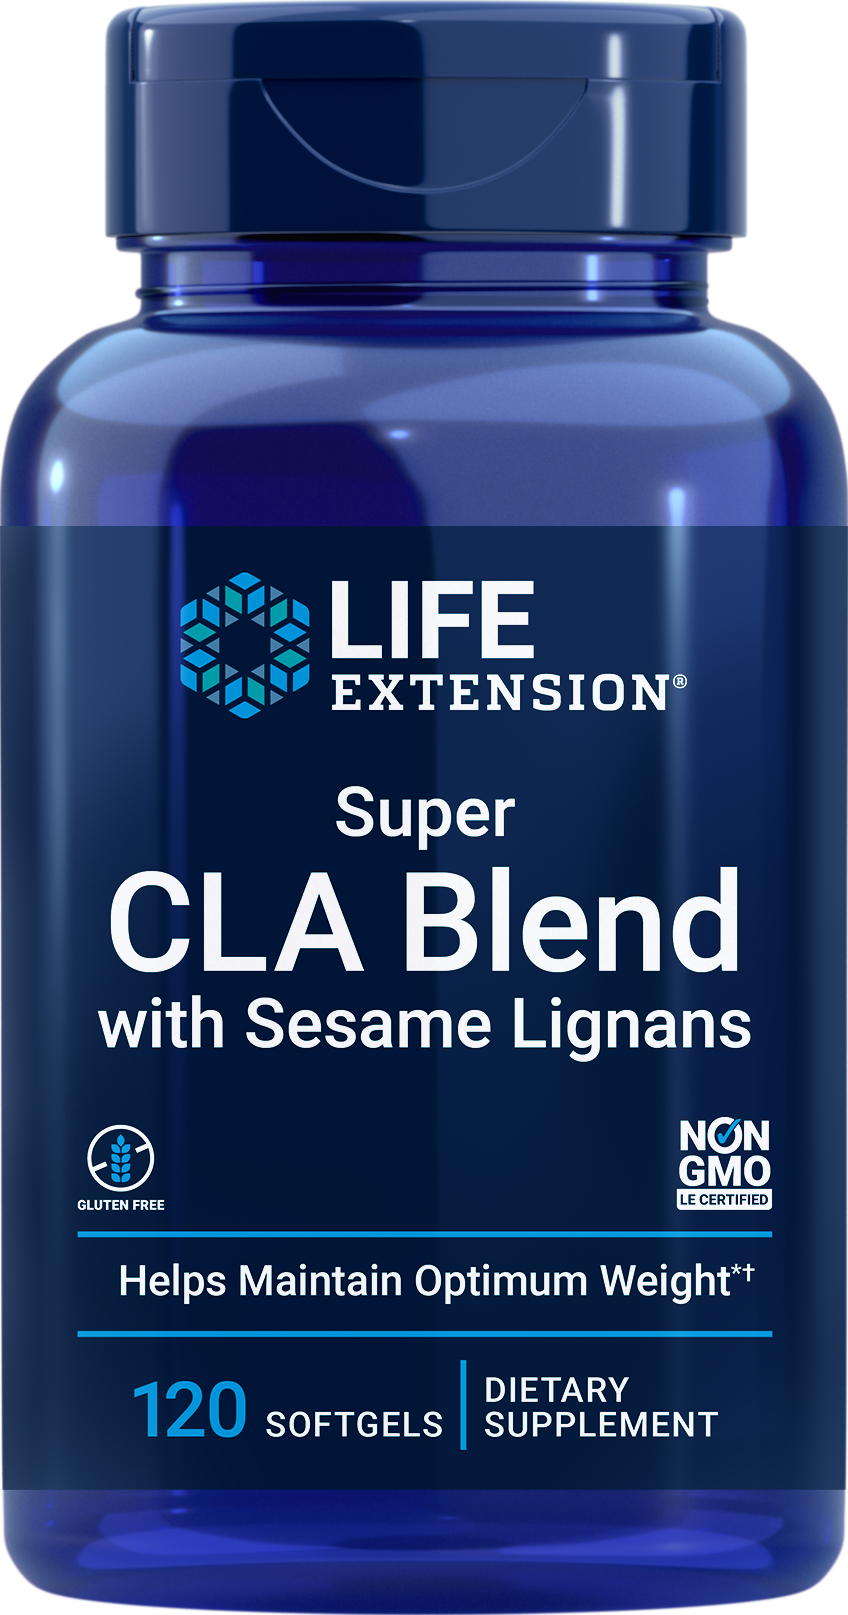 Super CLA Blend with Sesame Lignans